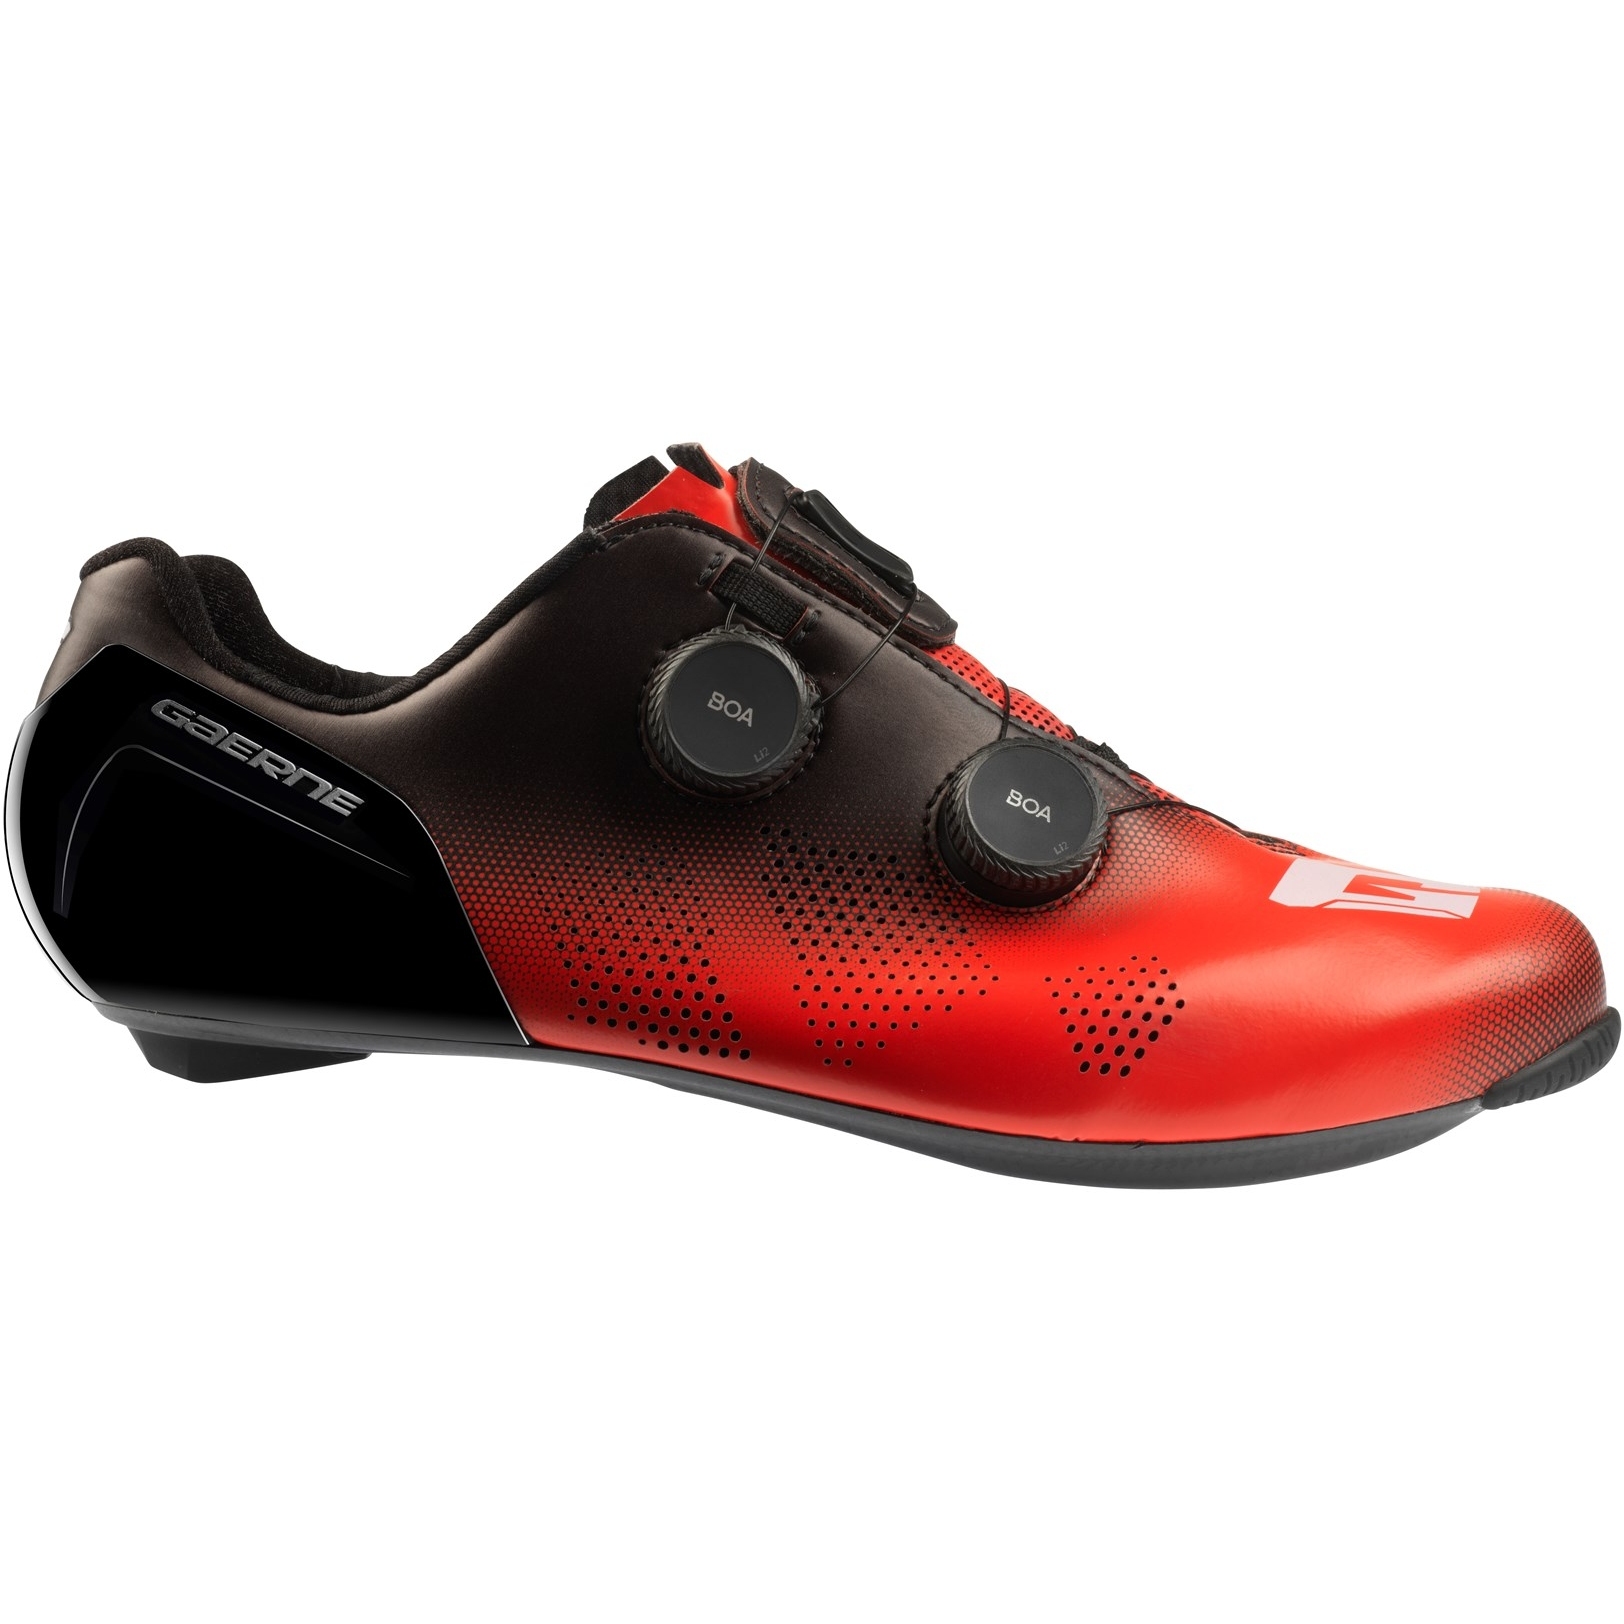 Produktbild von Gaerne Carbon G.STL Rennradschuhe - rot/schwarz